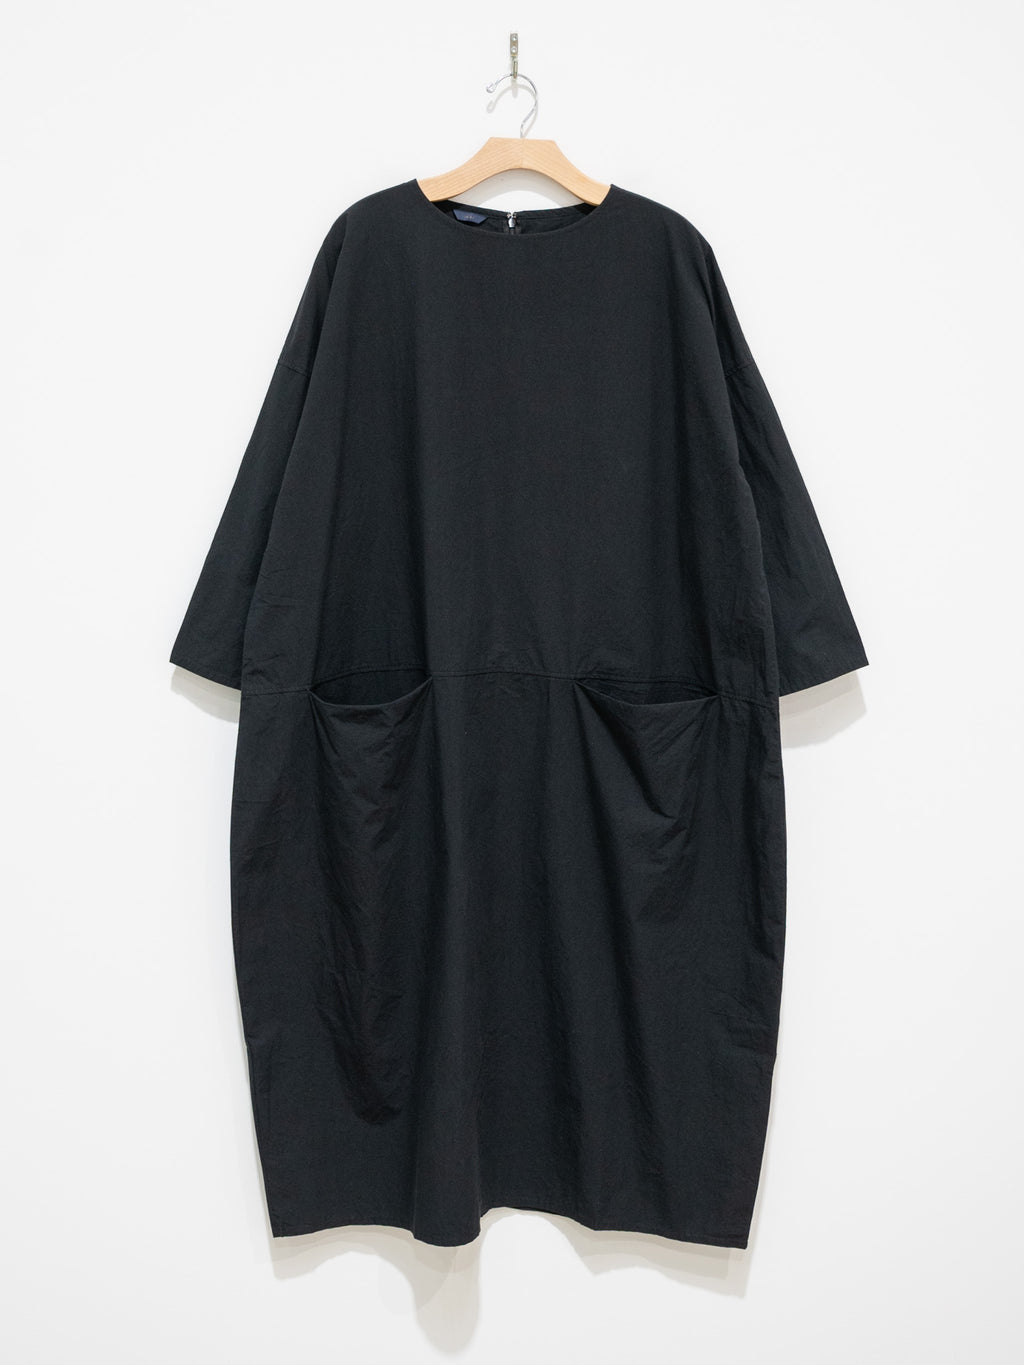 Namu Shop - ICHI Pocket Dress - Black